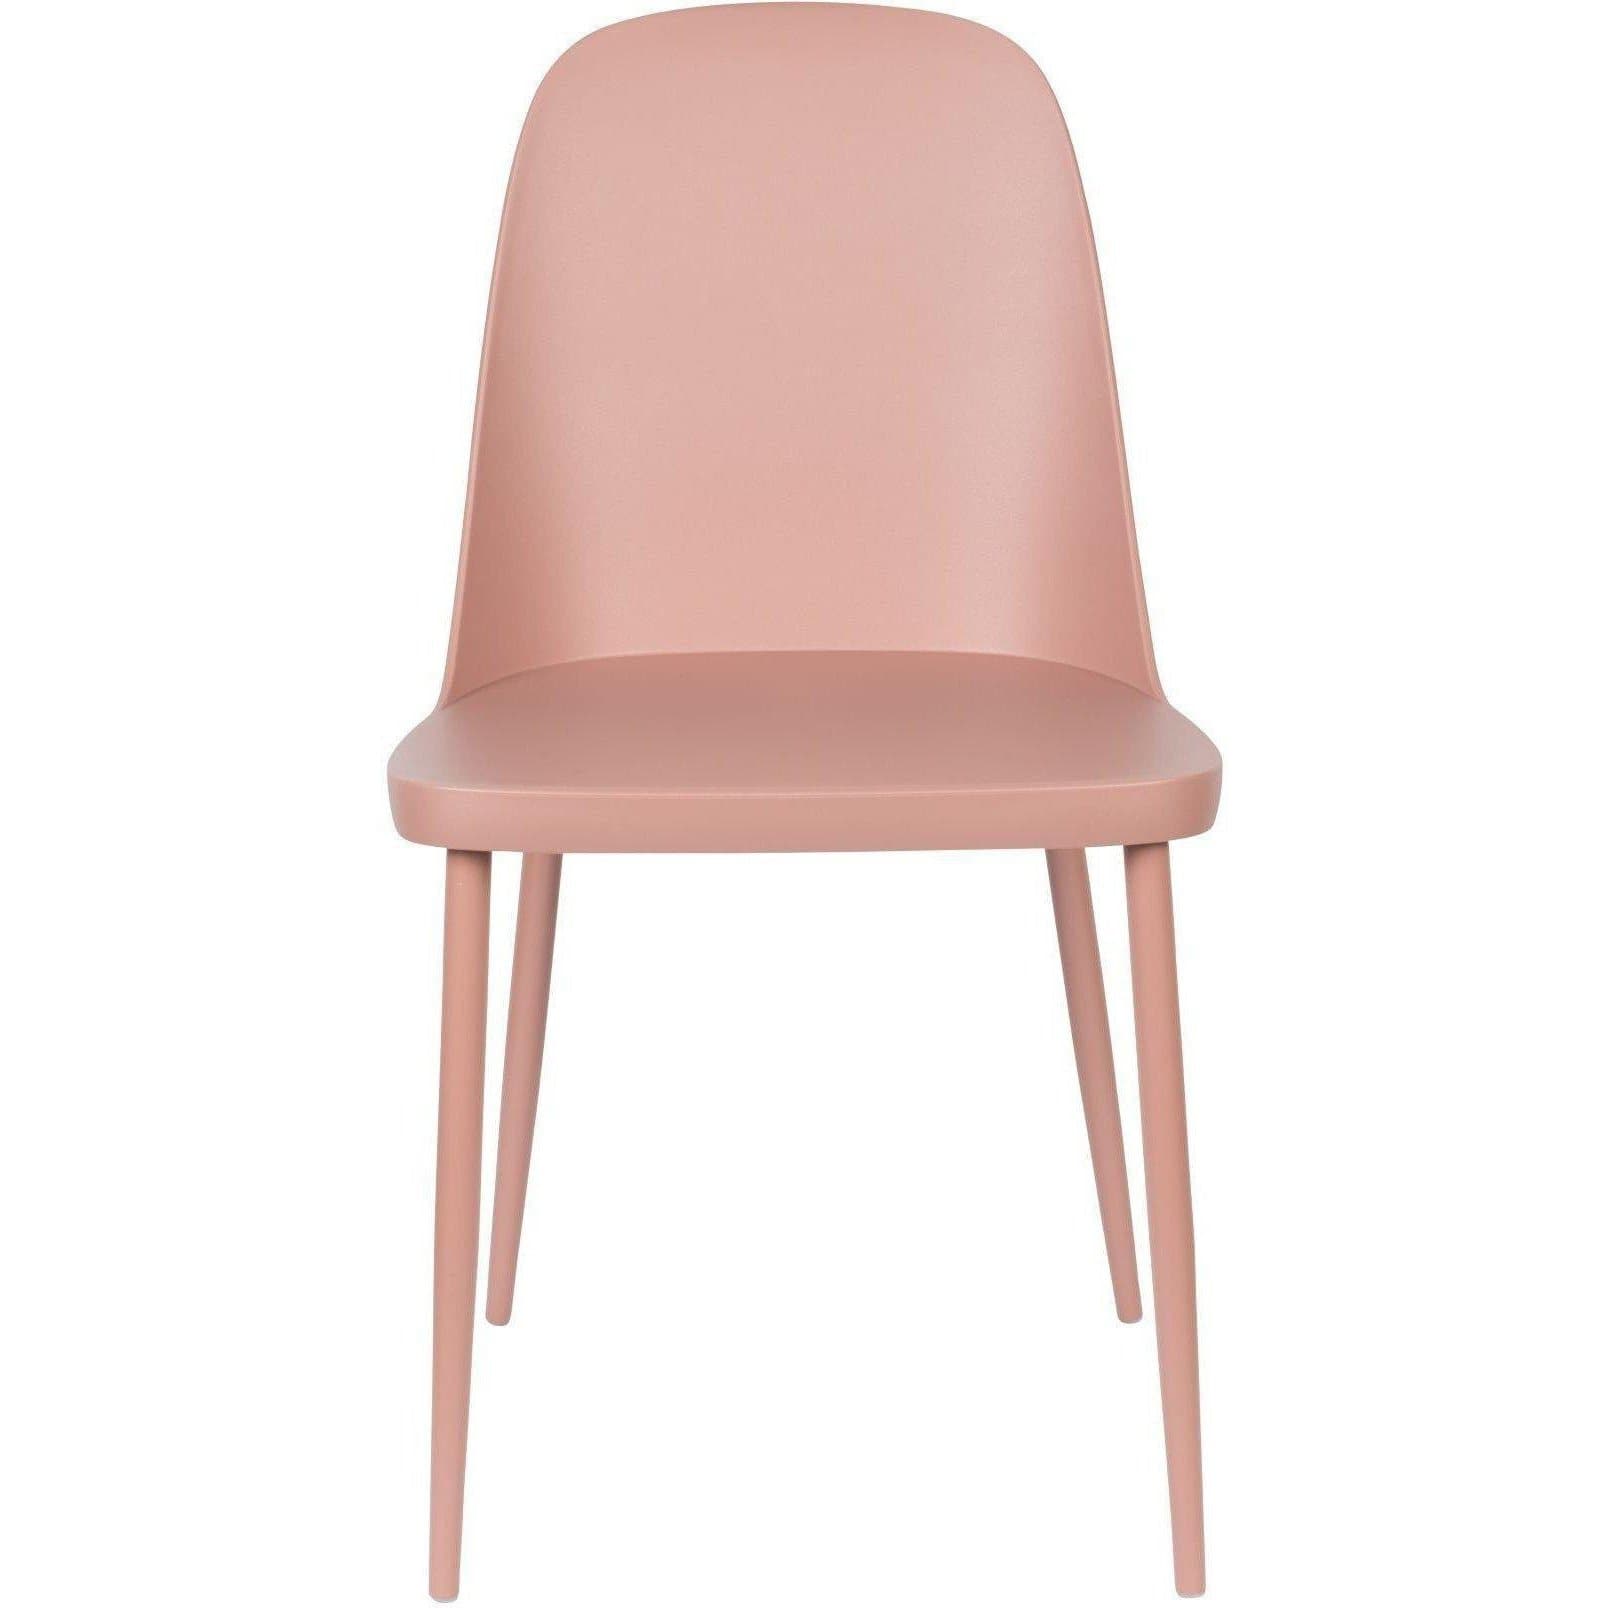 Verlaten stel je voor Dek de tafel Breeze Inari stoel roze – HelloChair